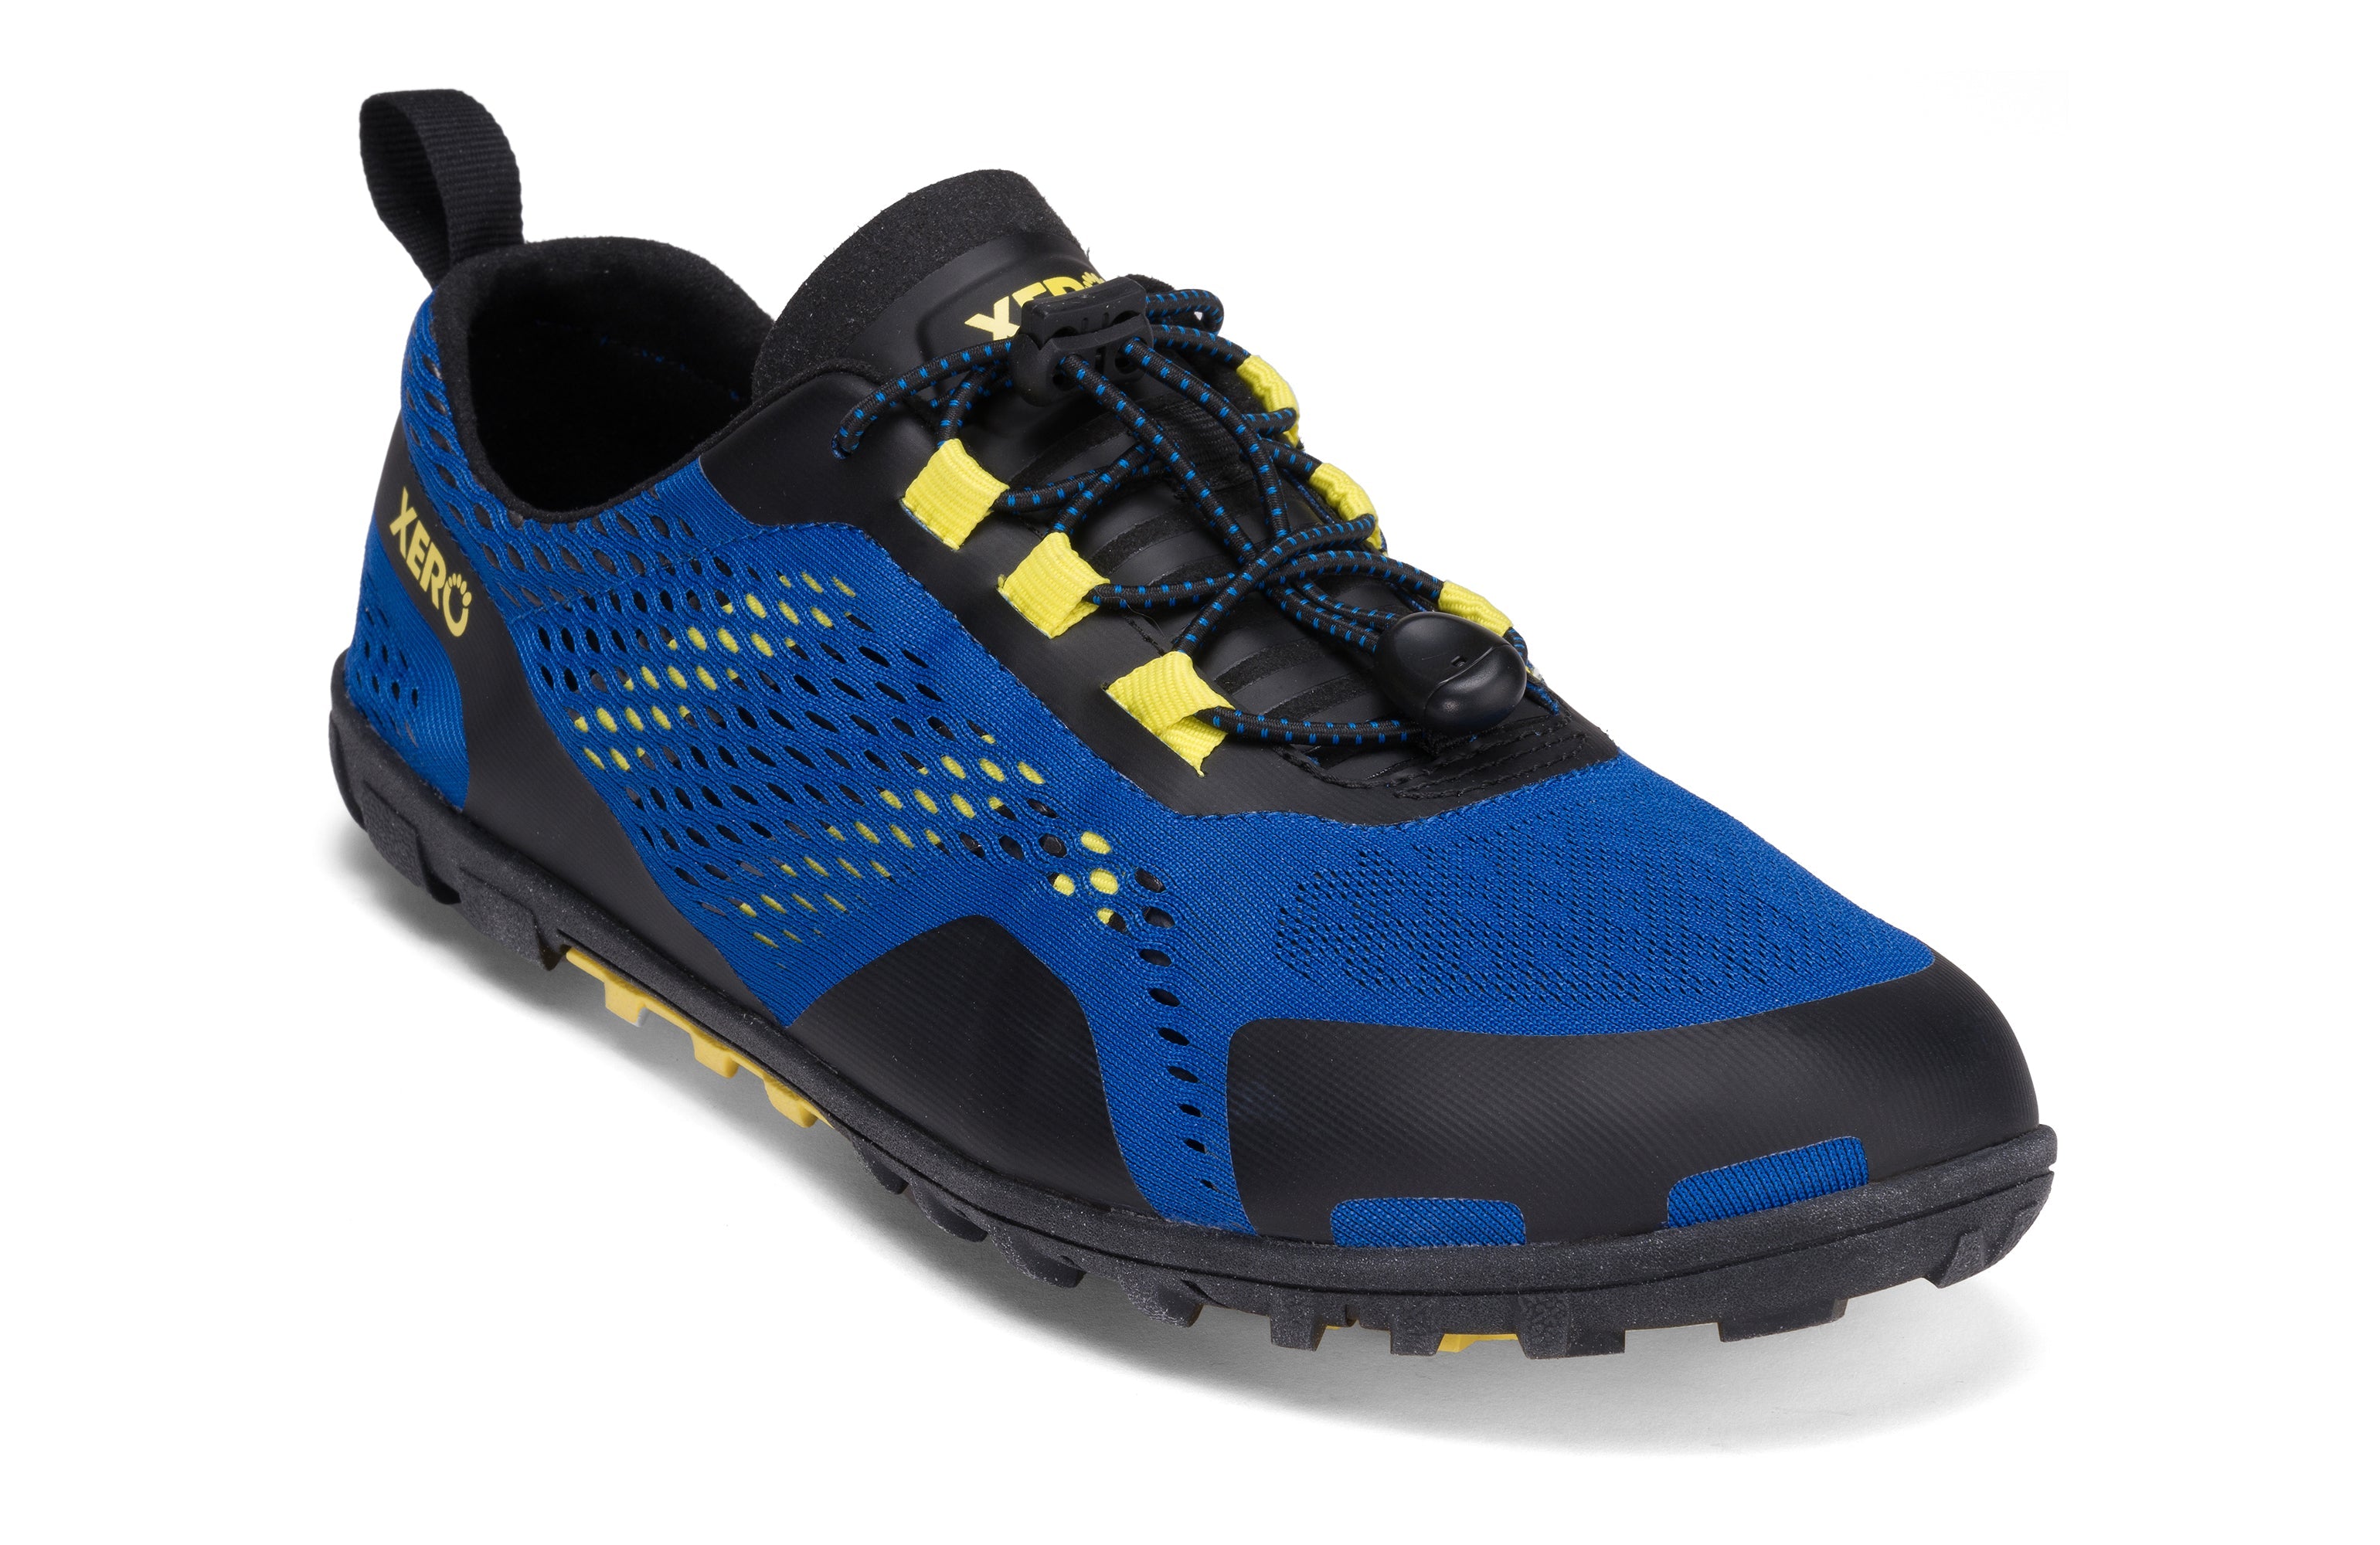 Xero Shoes Aqua X Sport barfods vand træningssko til mænd i farven blue / yellow, vinklet